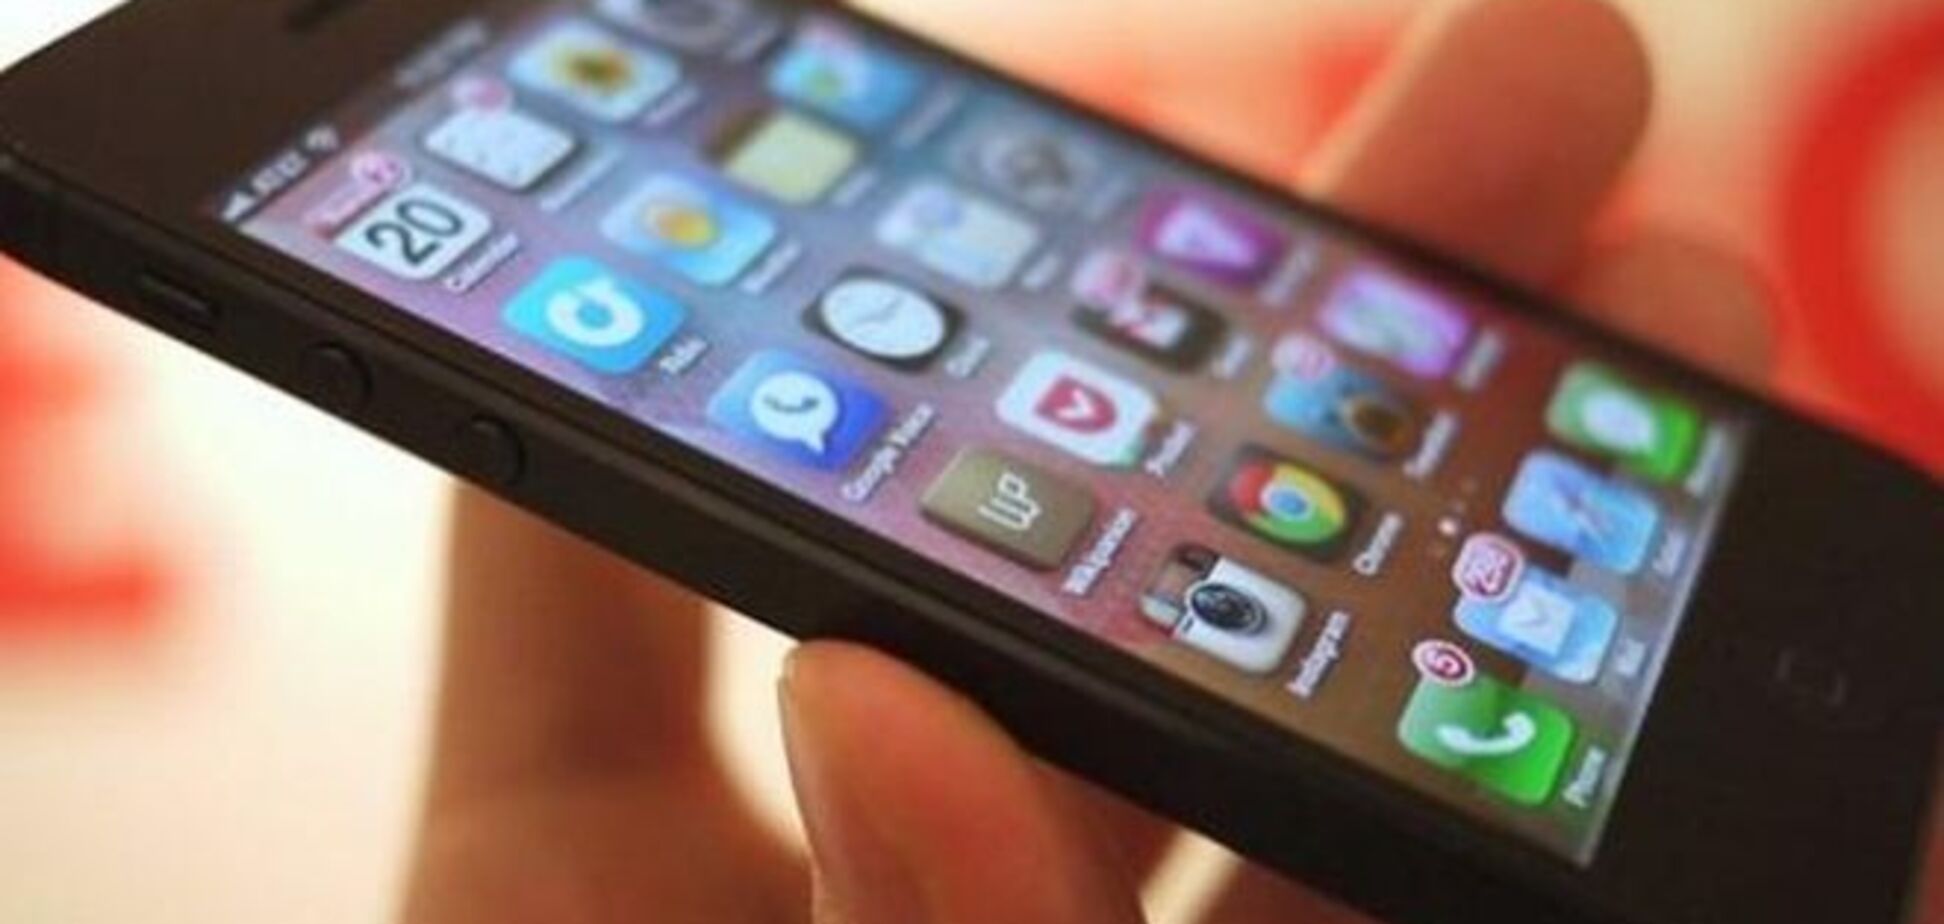 Производители мобильных телефонов начали бороться с «серыми мобилками»